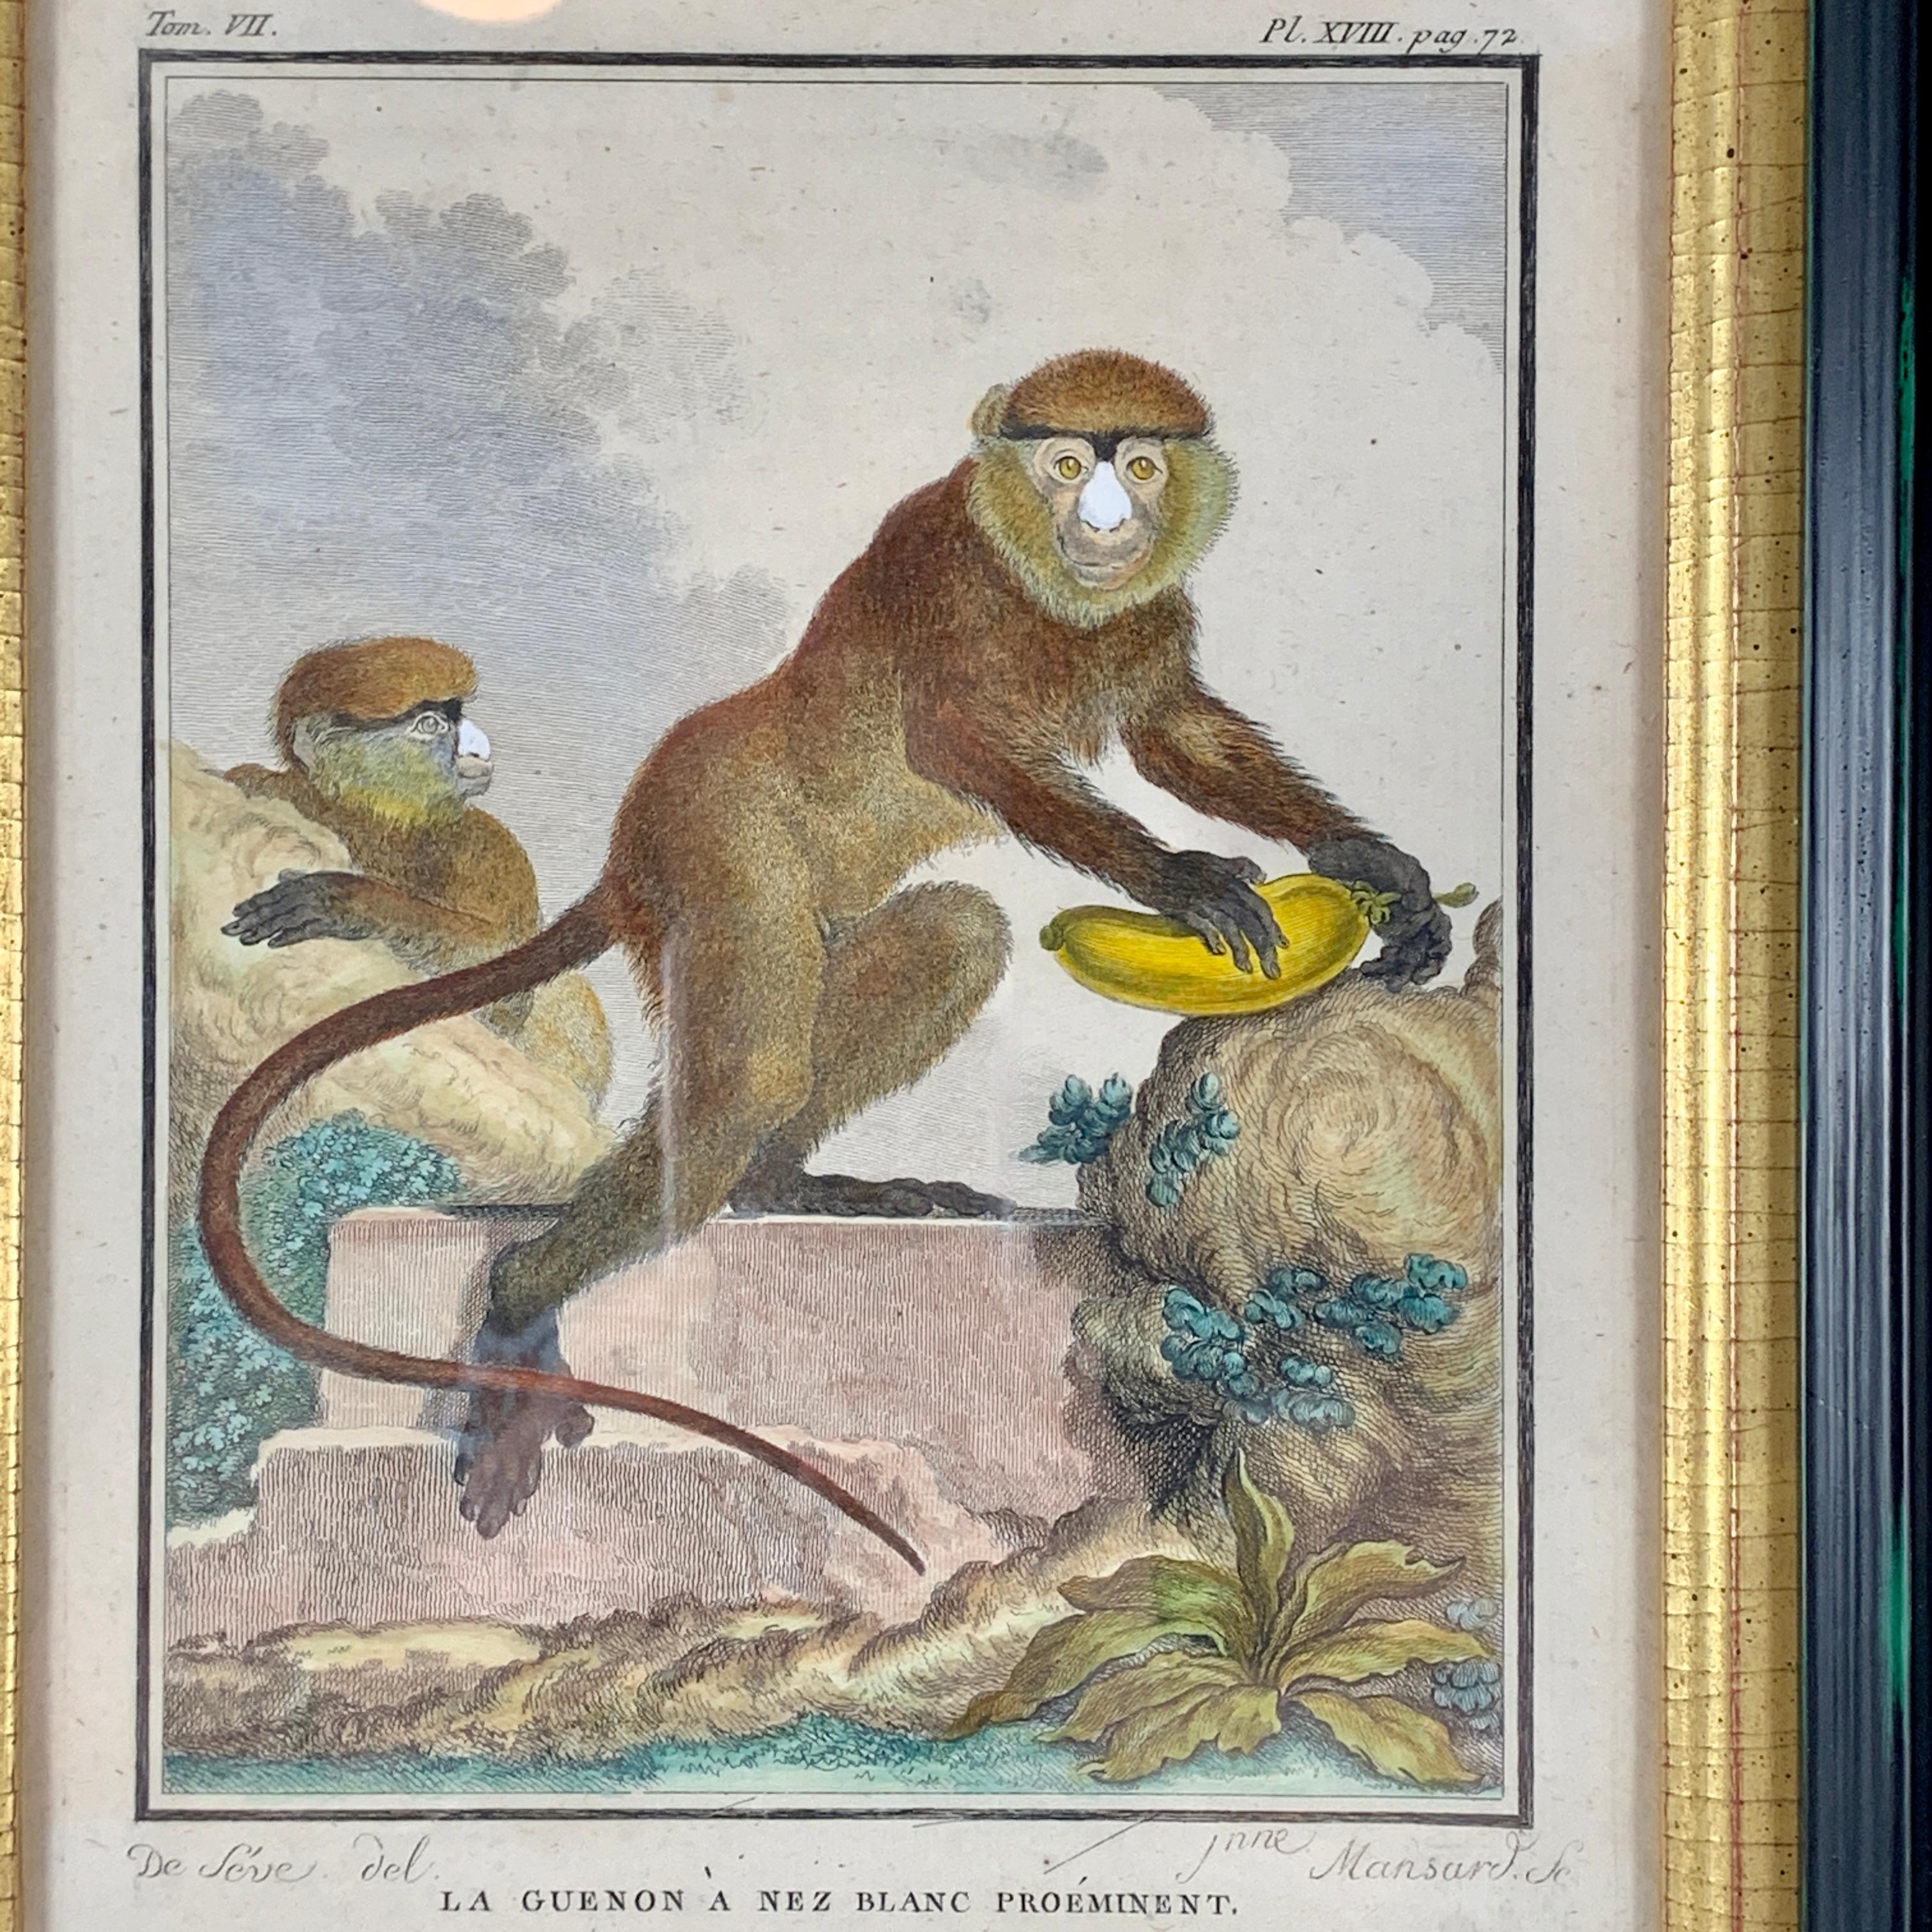 Assiette au singe magnifiquement encadrée de la série Buffon Comte de Quadrúpedes par Georges-Louis Leclerc, France - vers 1770.

Gravure sur cuivre, coloriée à la main, intitulée La Guenon a Nez Blanc Prominent, tirée de l'